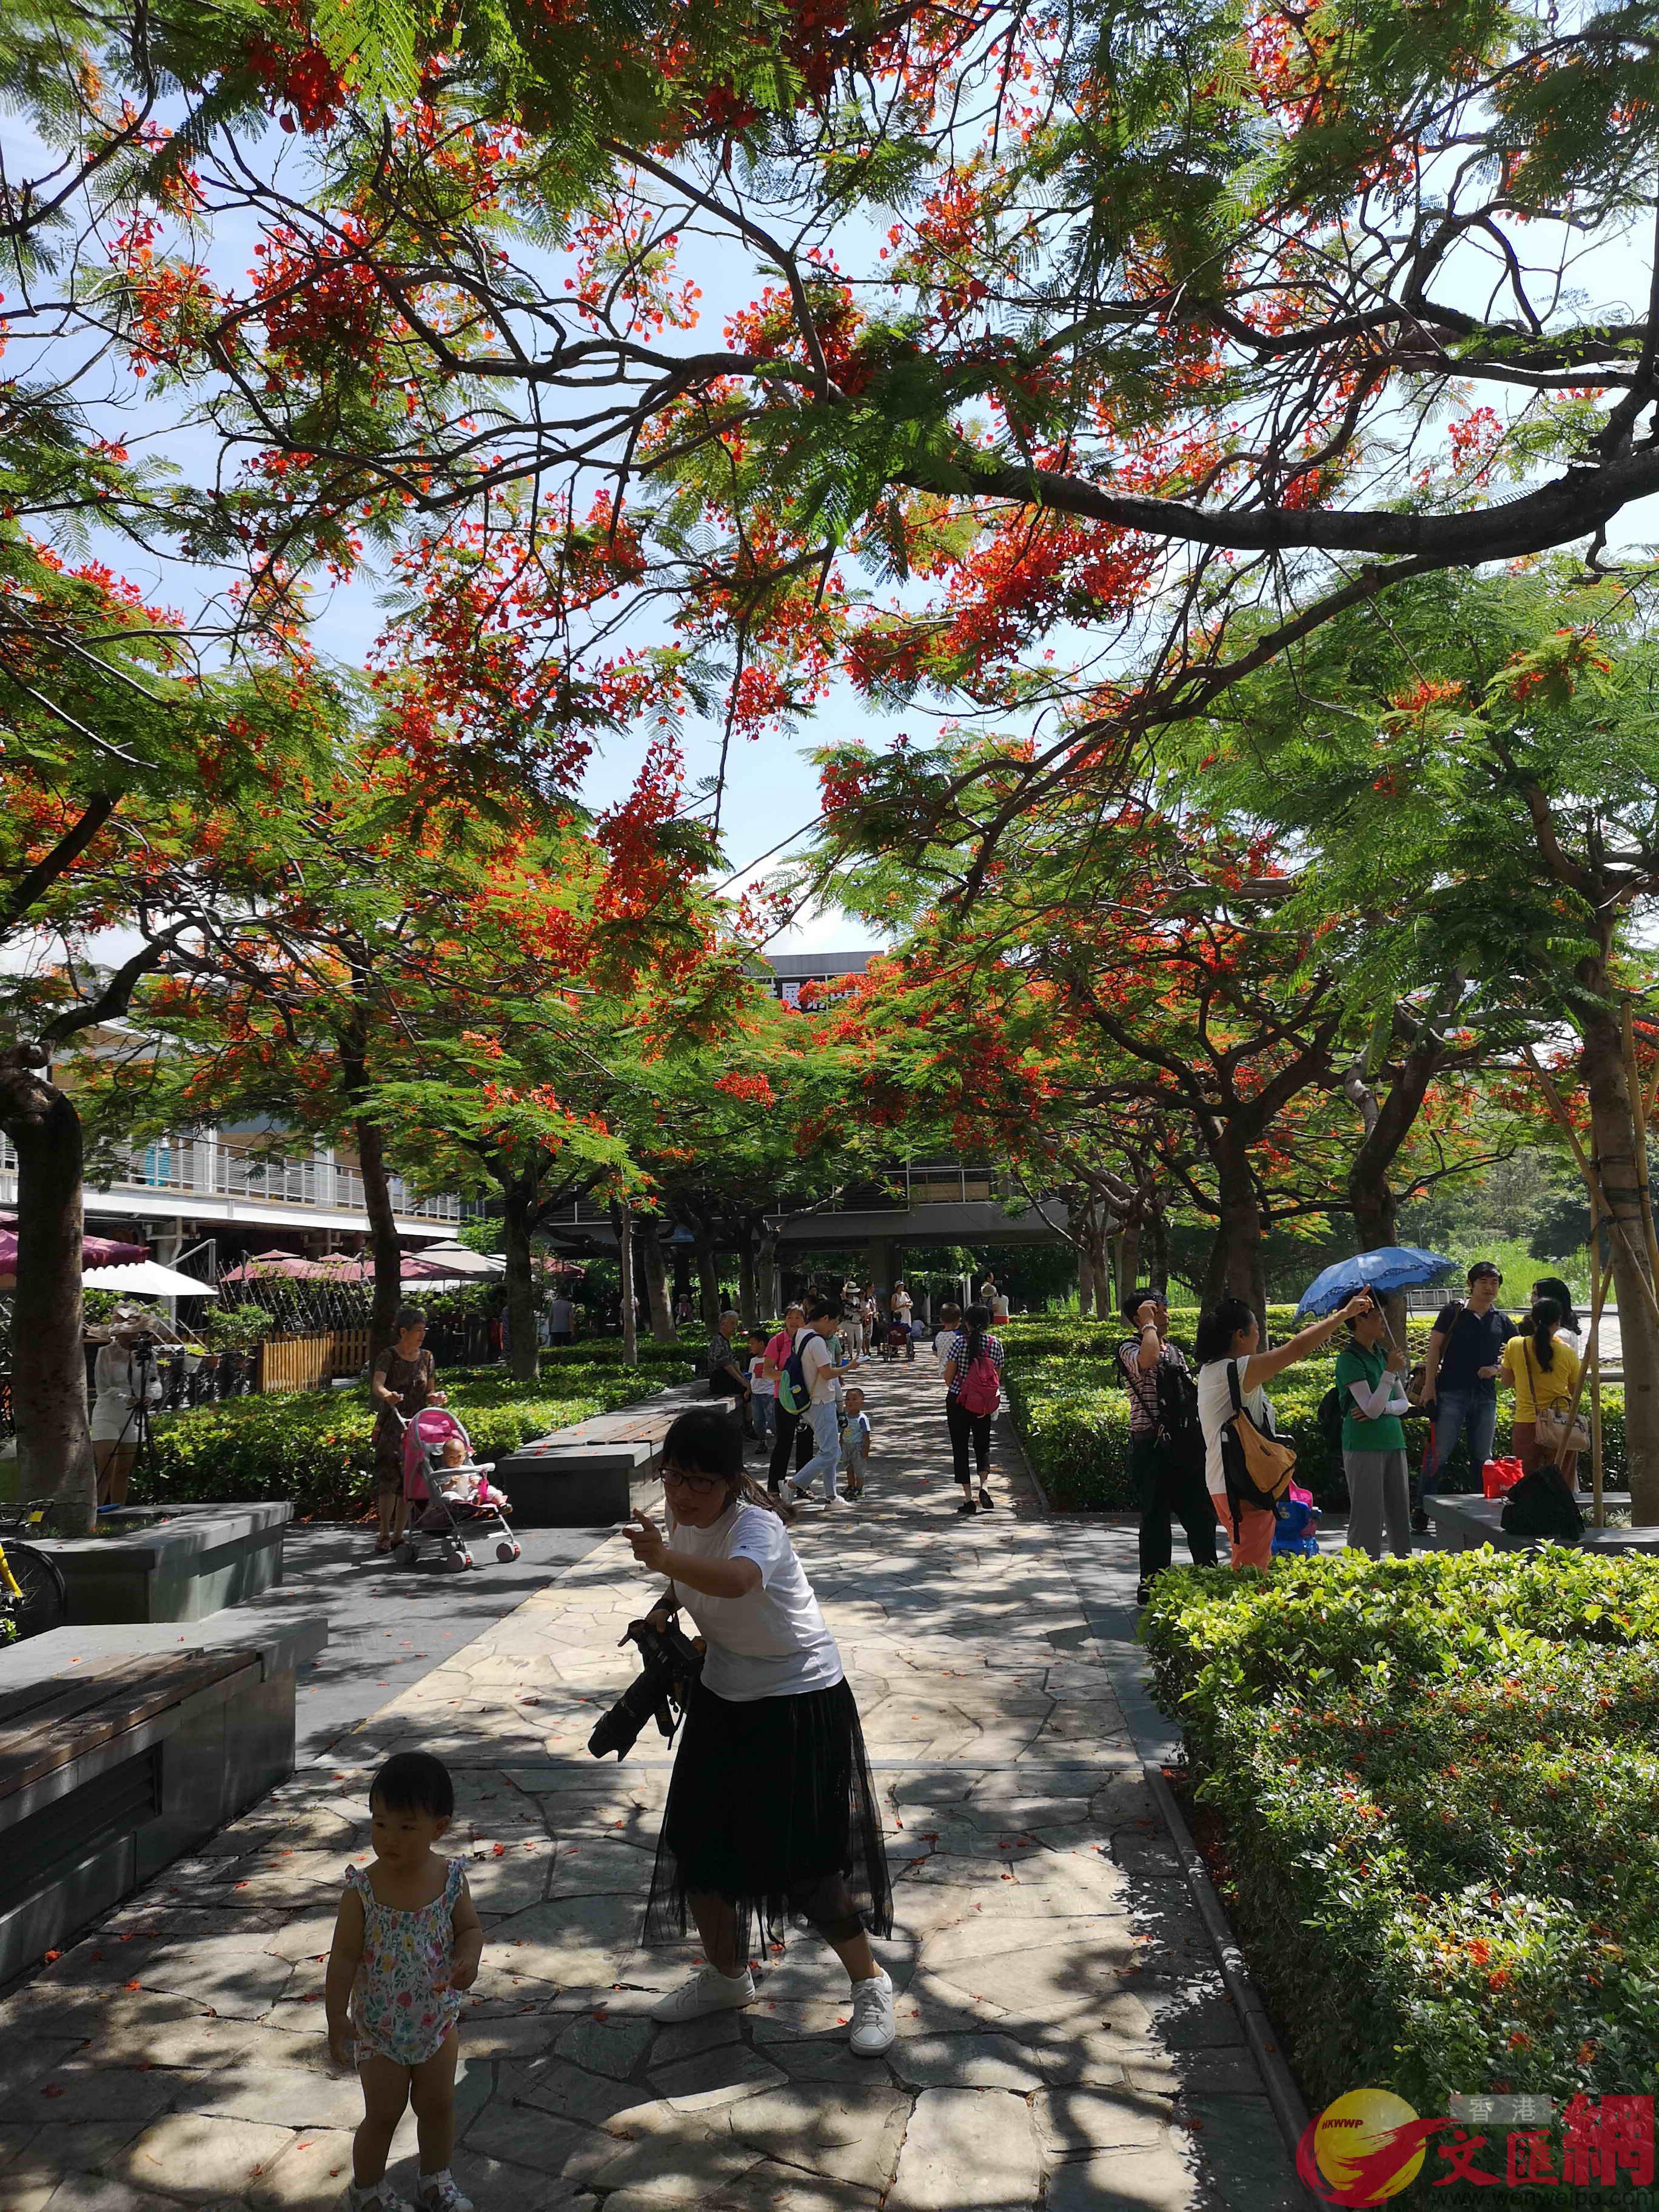 華僑城生態廣場的鳳凰花海在藍天綠樹的襯托下鮮艷奪目，每年都吸引了大量遊客來遊玩。